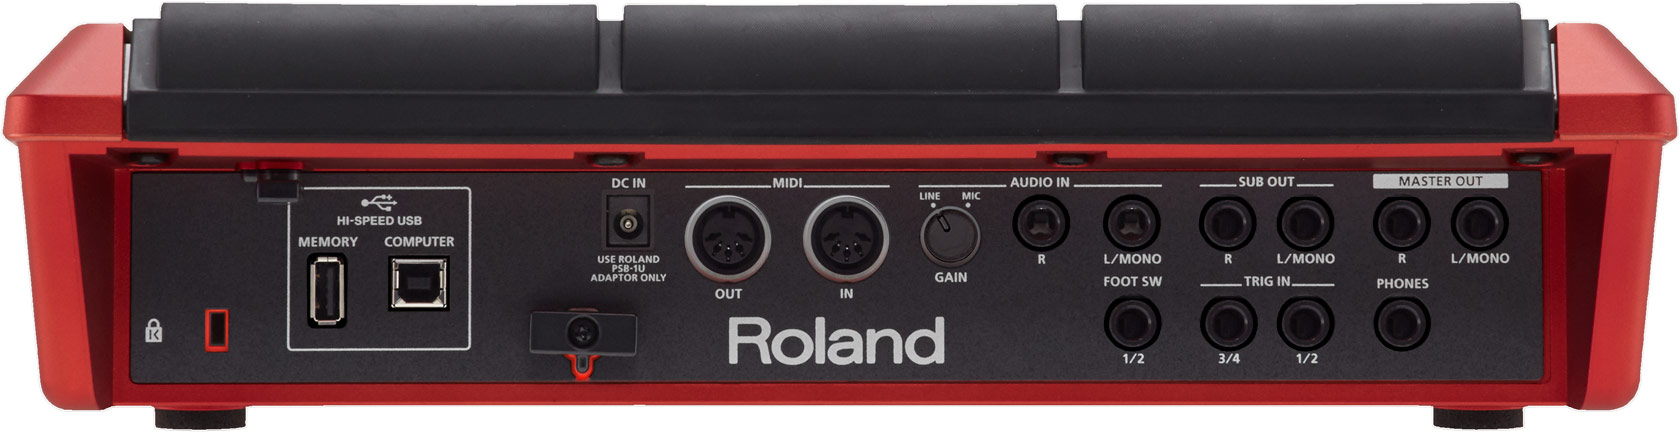 Roland Spd-sx Se - E-Drums Multi pad - Variation 1